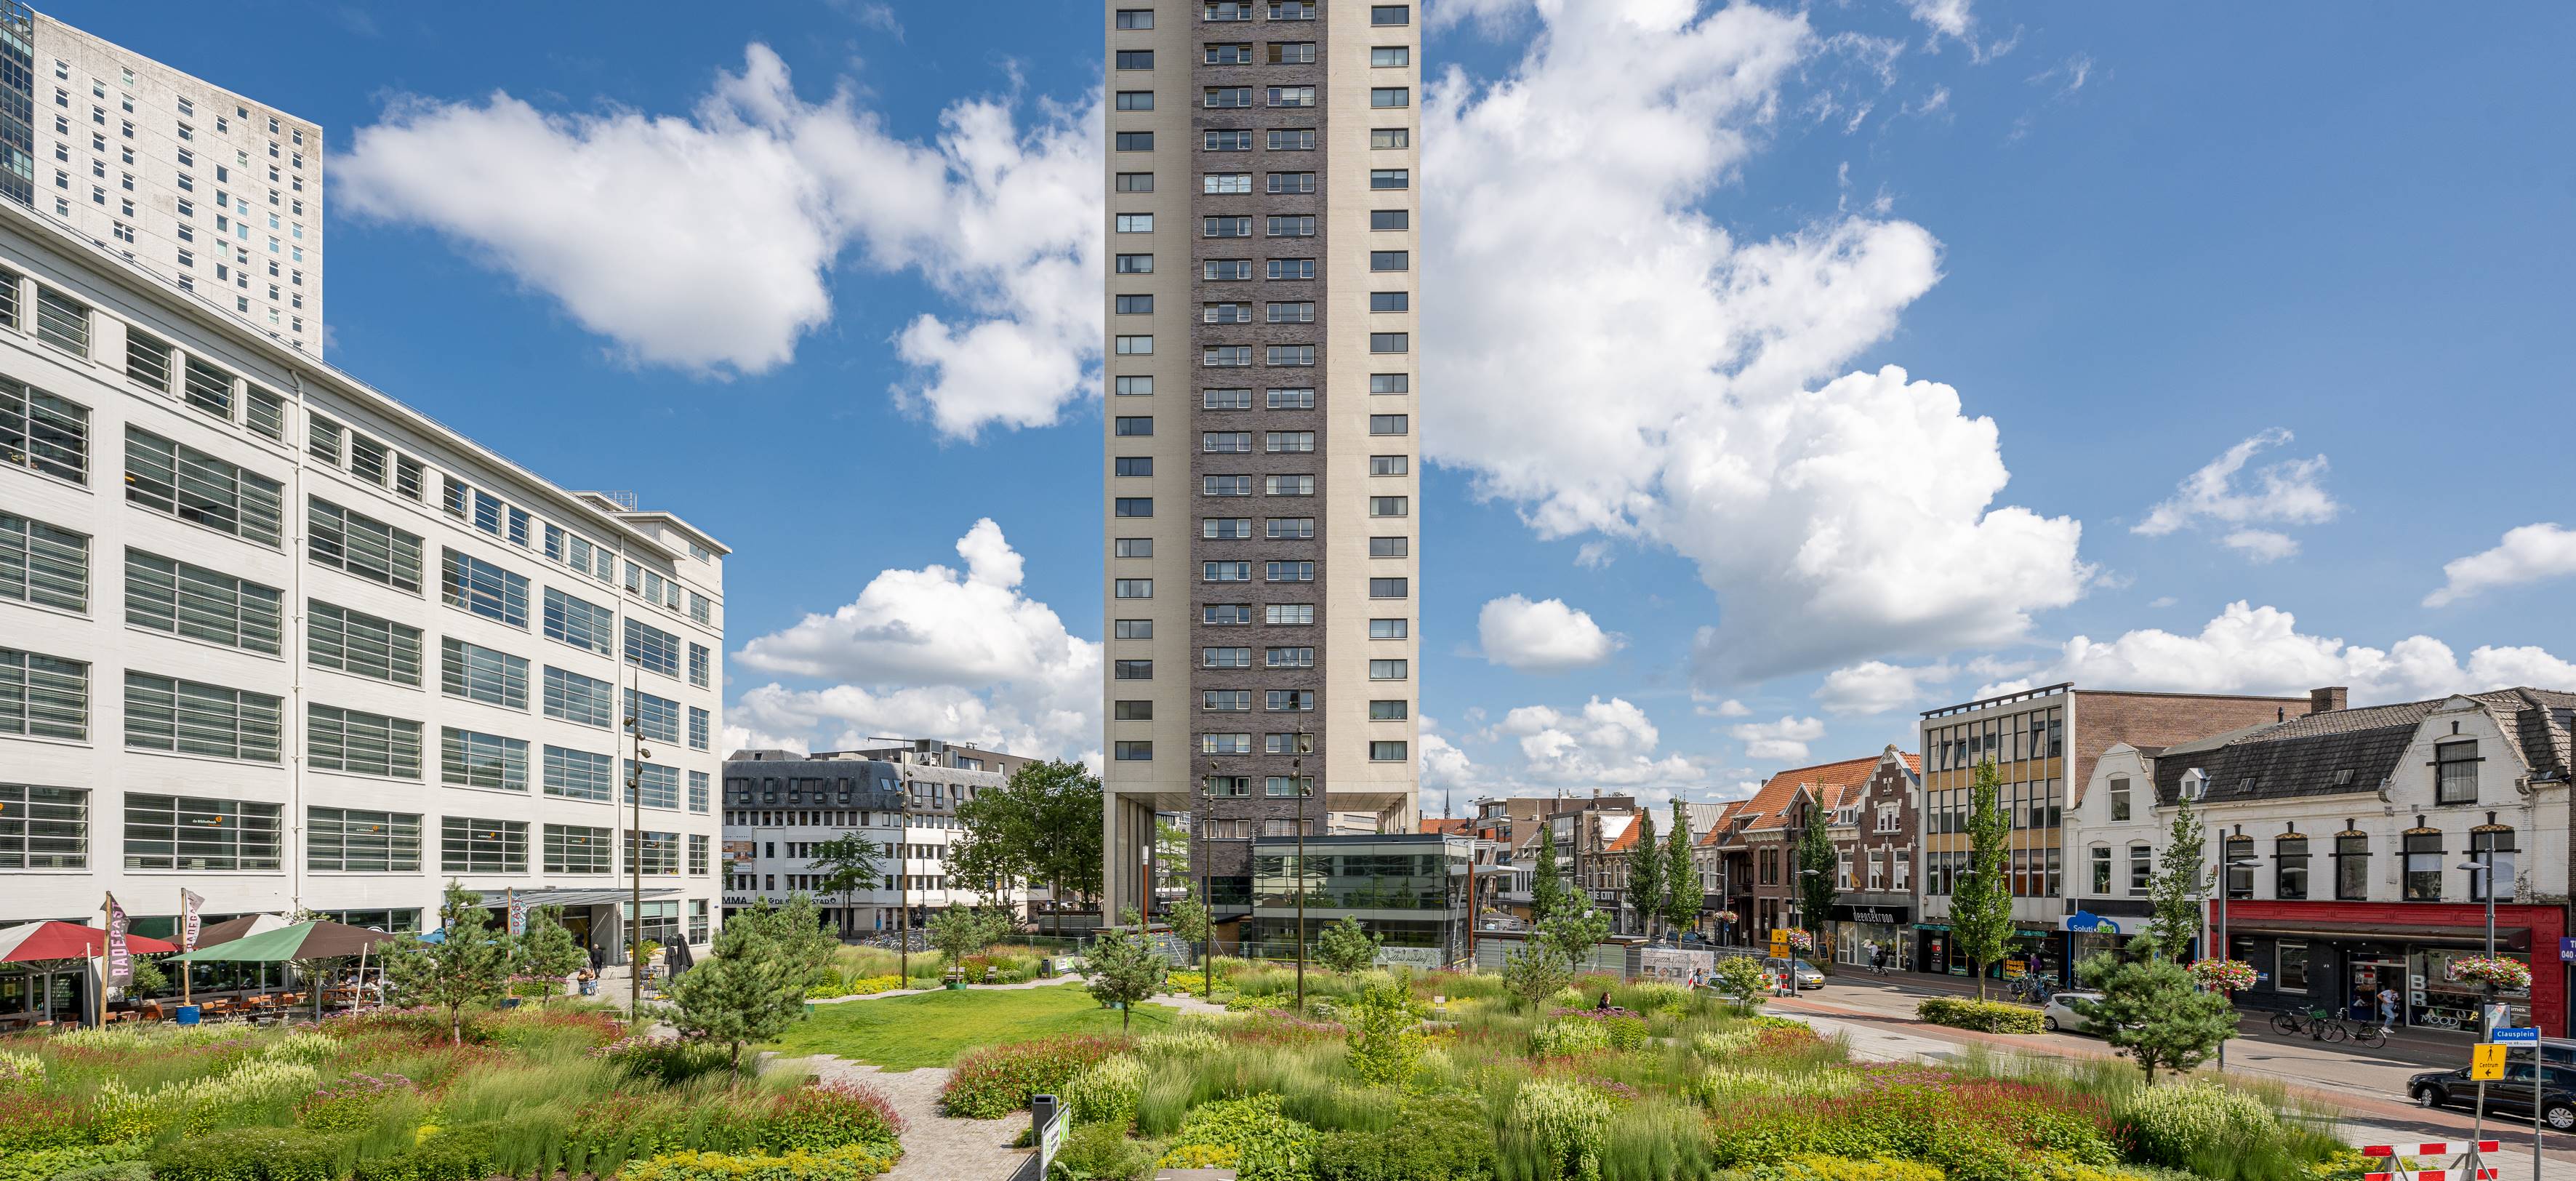 Clausplein, Eindhoven - een groen, stedelijk plein die is aangelegd met een combinatie onze verschillende substraten.